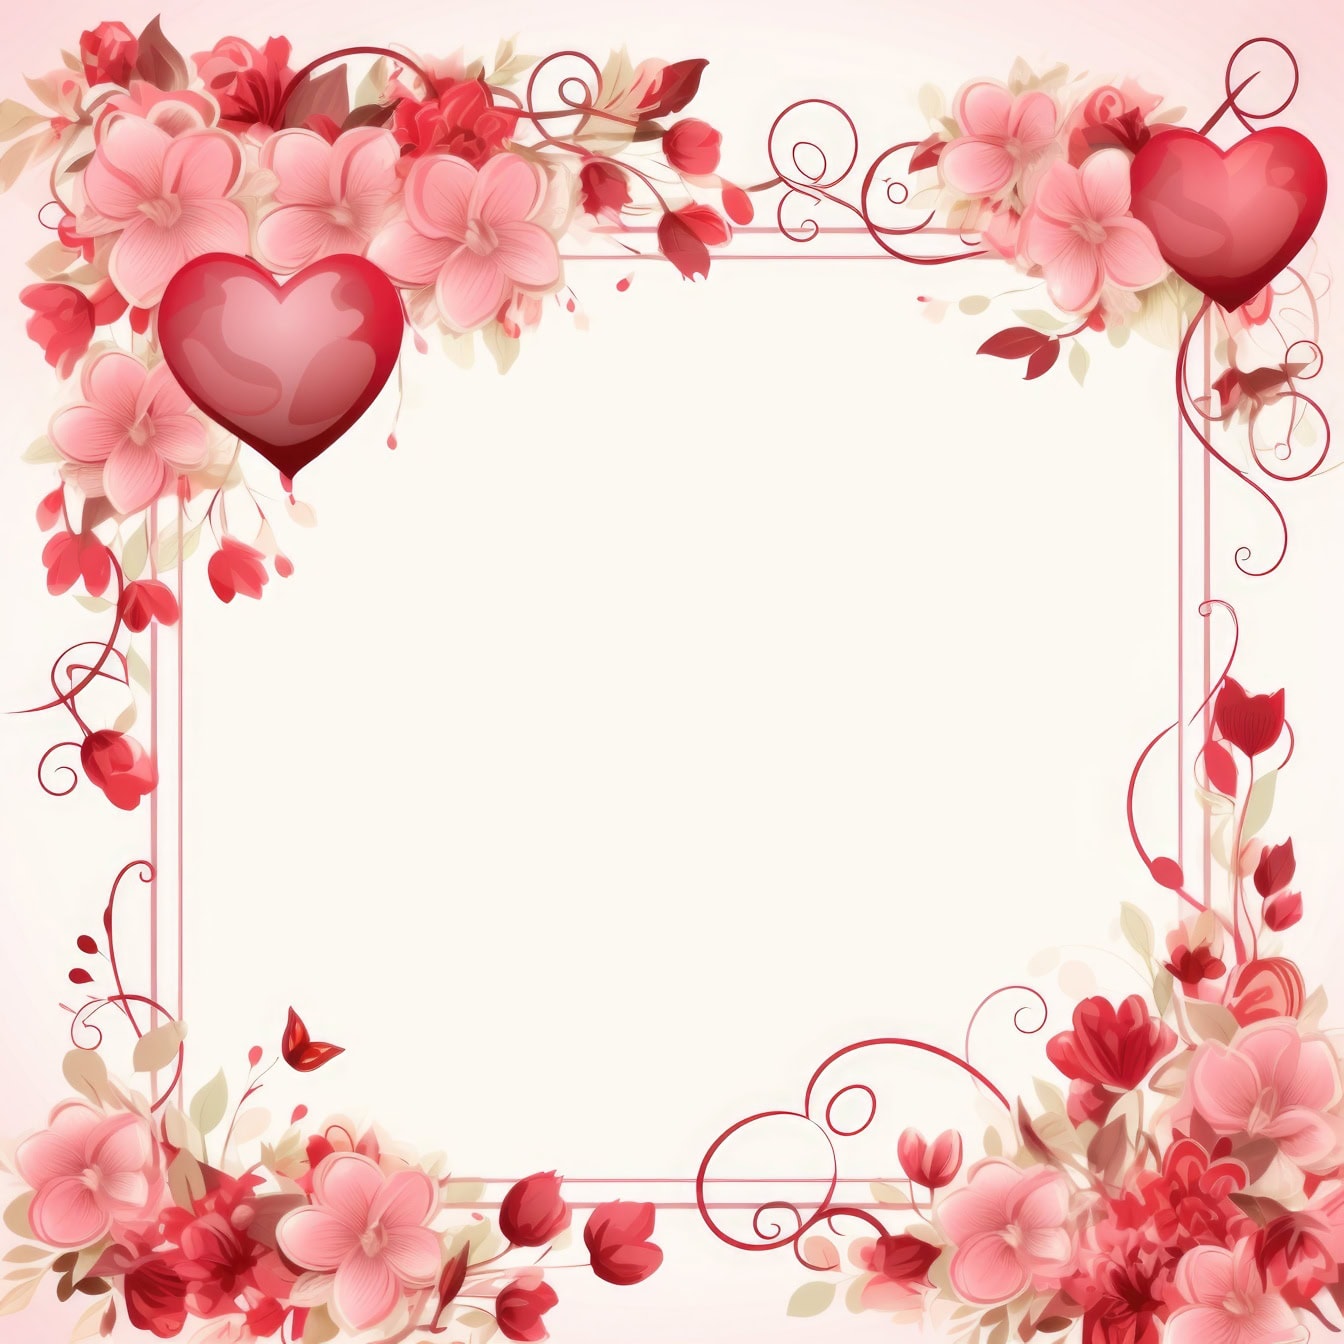 Template kartu ucapan Hari Valentine dengan bingkai bunga dan hati